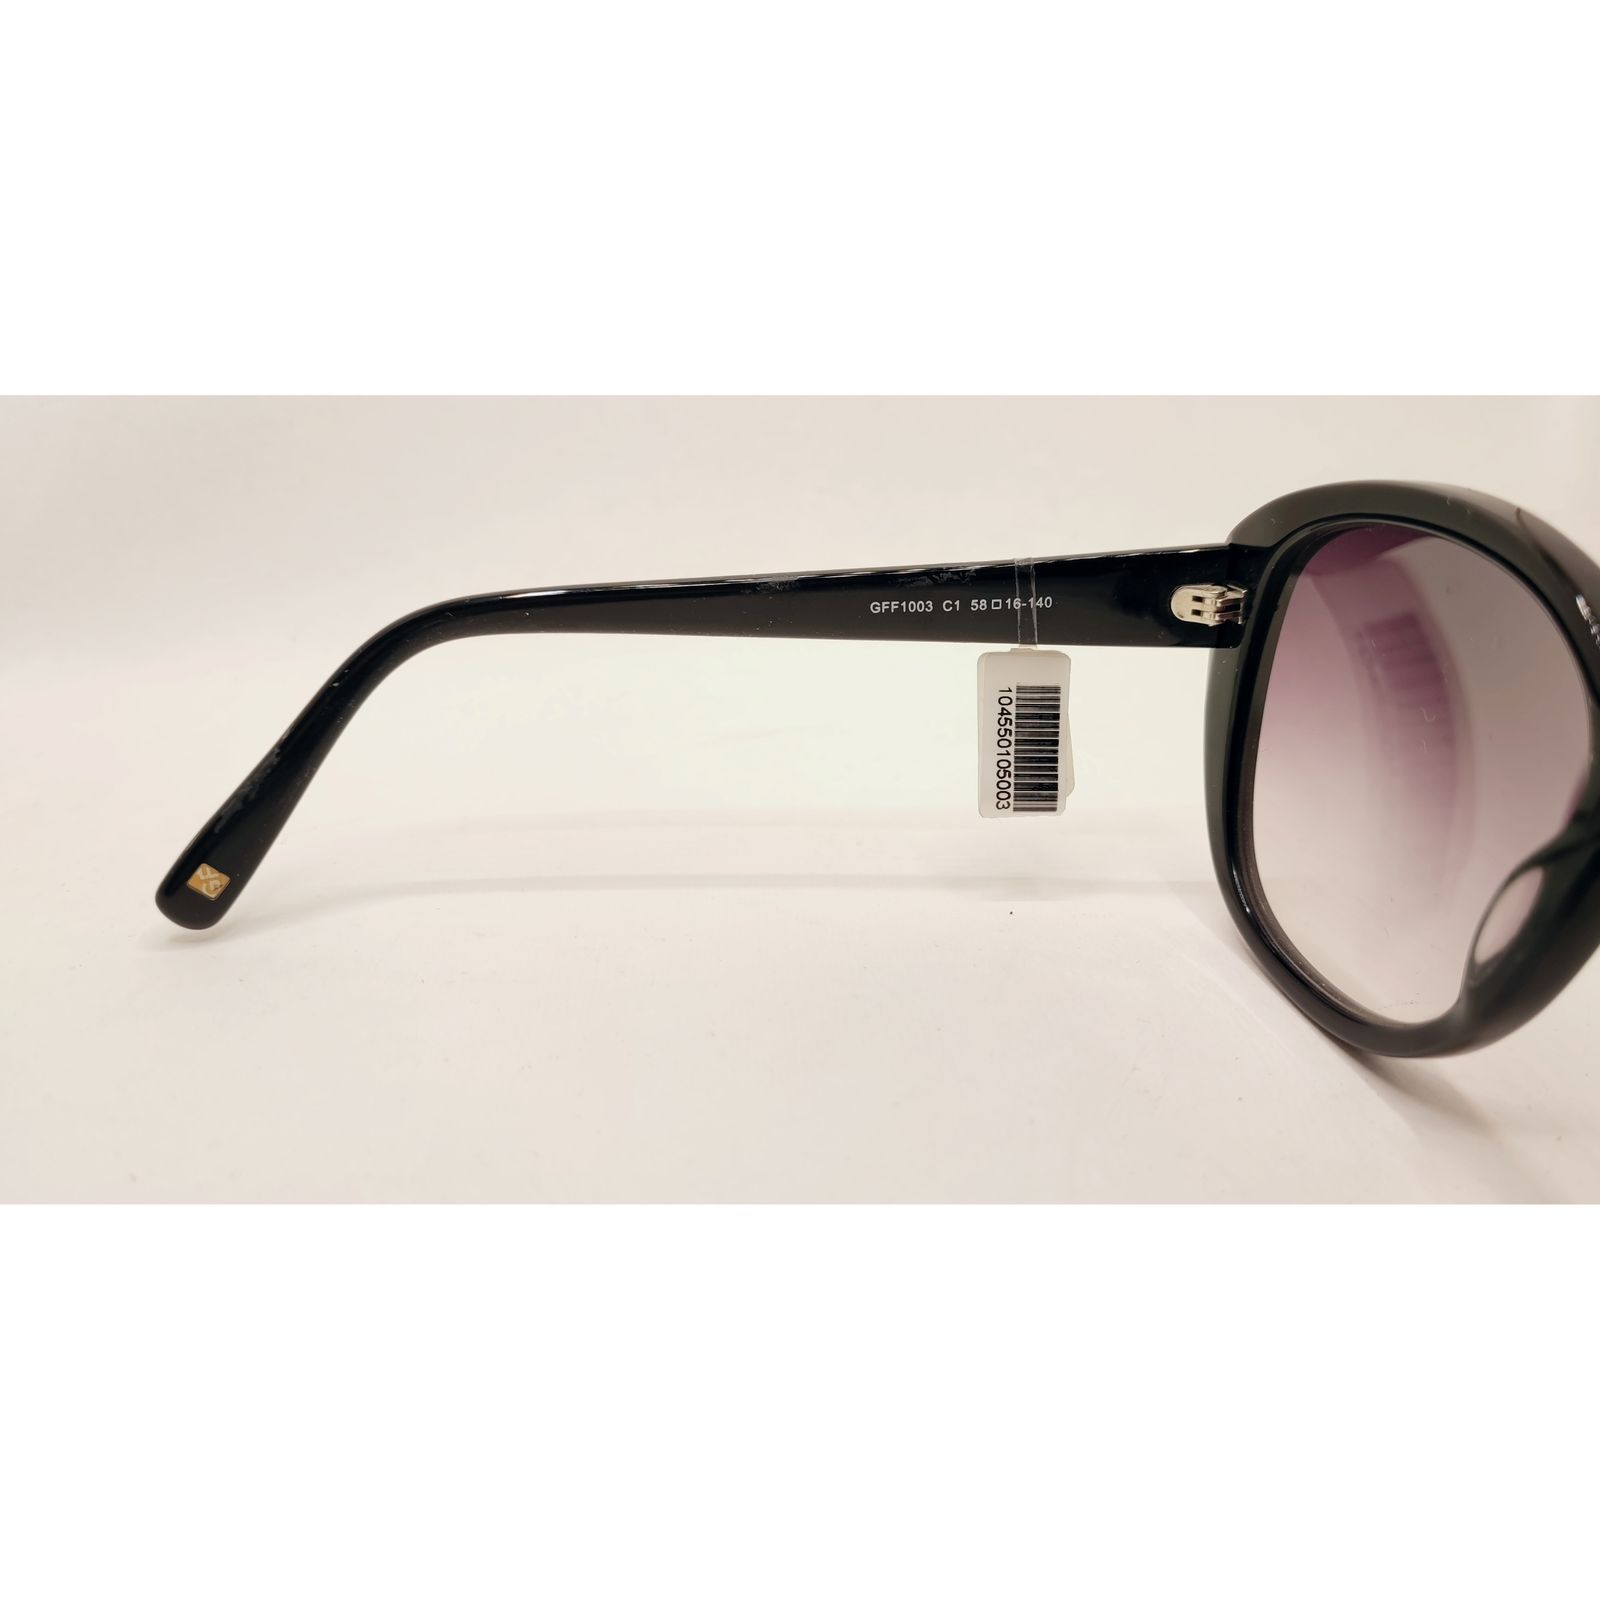  عینک آفتابی زنانه جی اف فره مدل GFF 1003 -  - 4